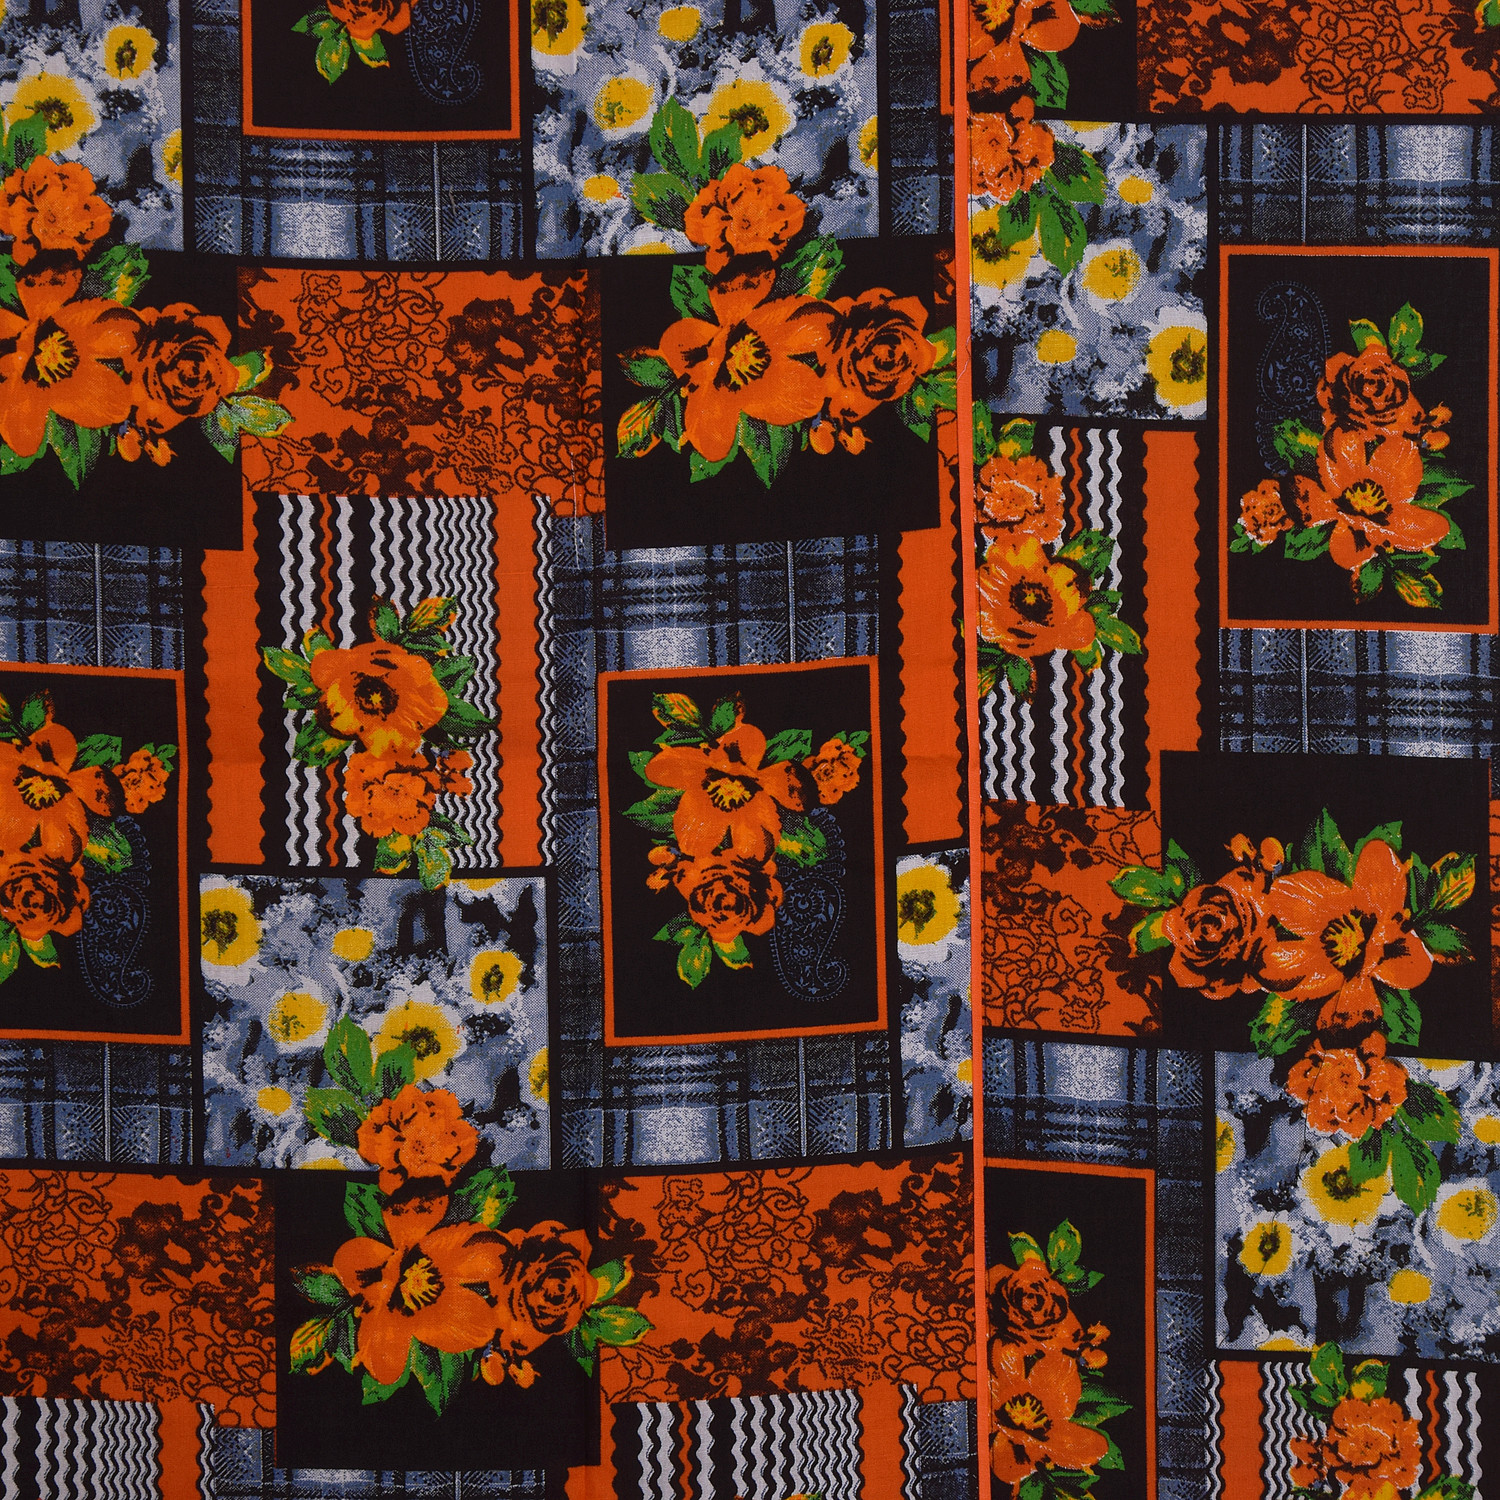 Kuber Industries Flower Design Cotton Diwan Set With 8 Pieces (Orange & Black)-HS_38_KUBMART21141